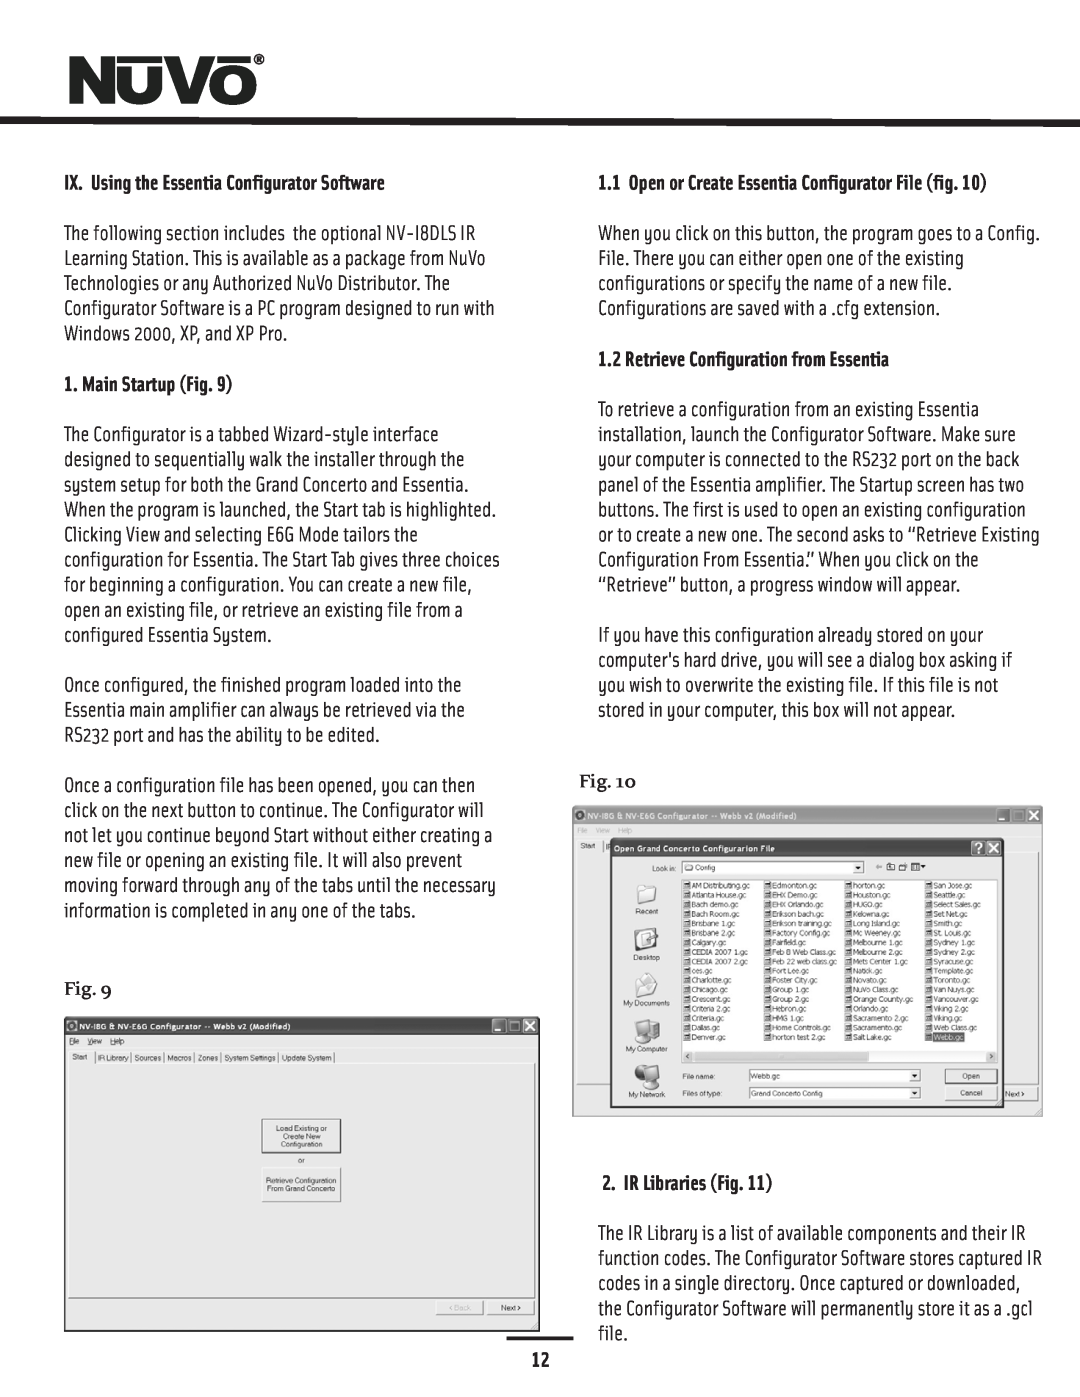 Nuvo NV-E6GXS manual IX. Using the Essentia Configurator Software, Main Startup Fig, Retrieve Configuration from Essentia 